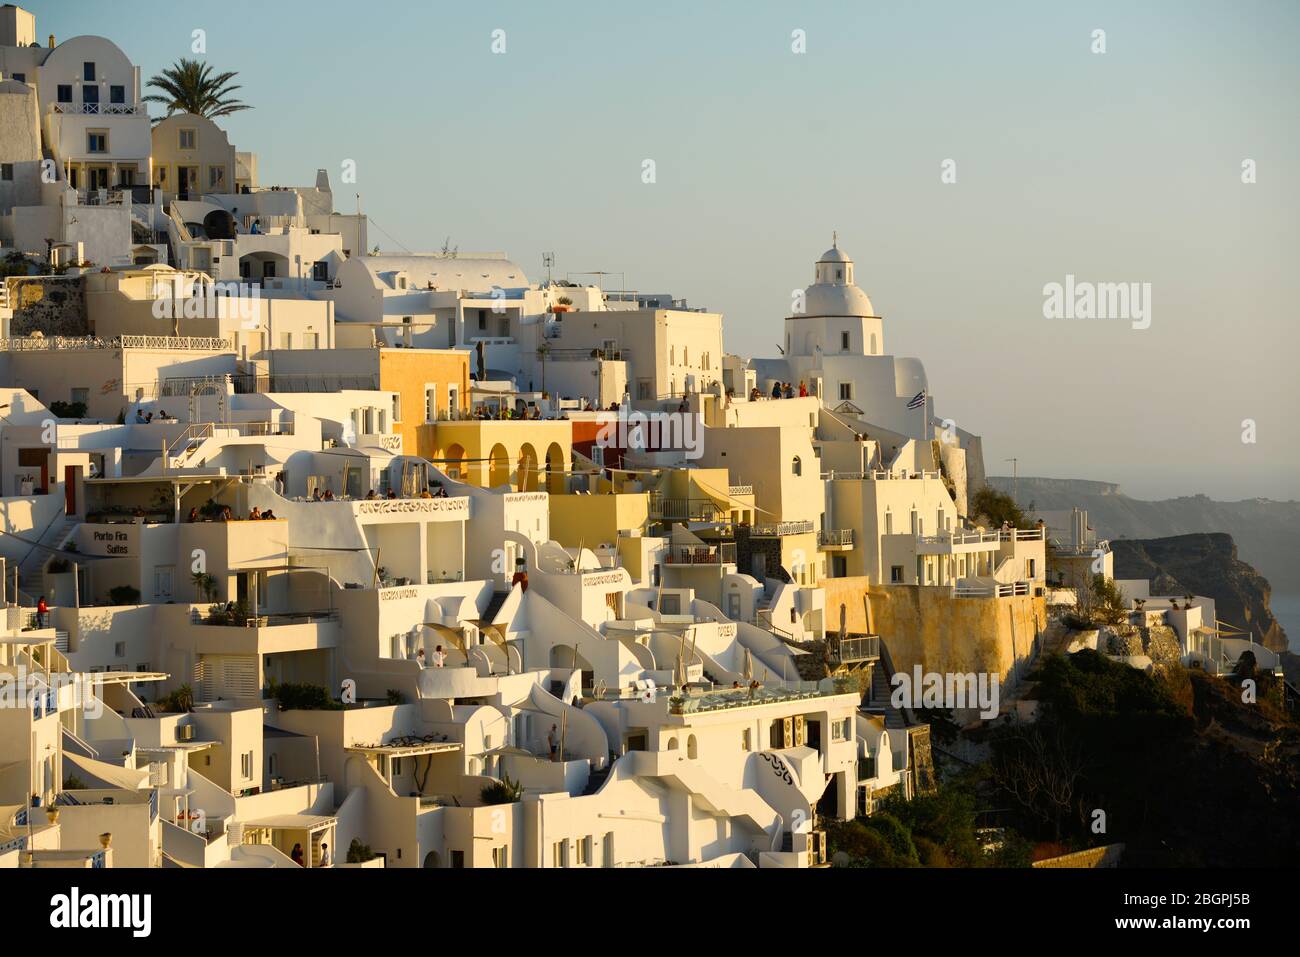 Coucher de soleil sur les maisons lavées de blanc à Fira, Stantorini. Grèce Banque D'Images